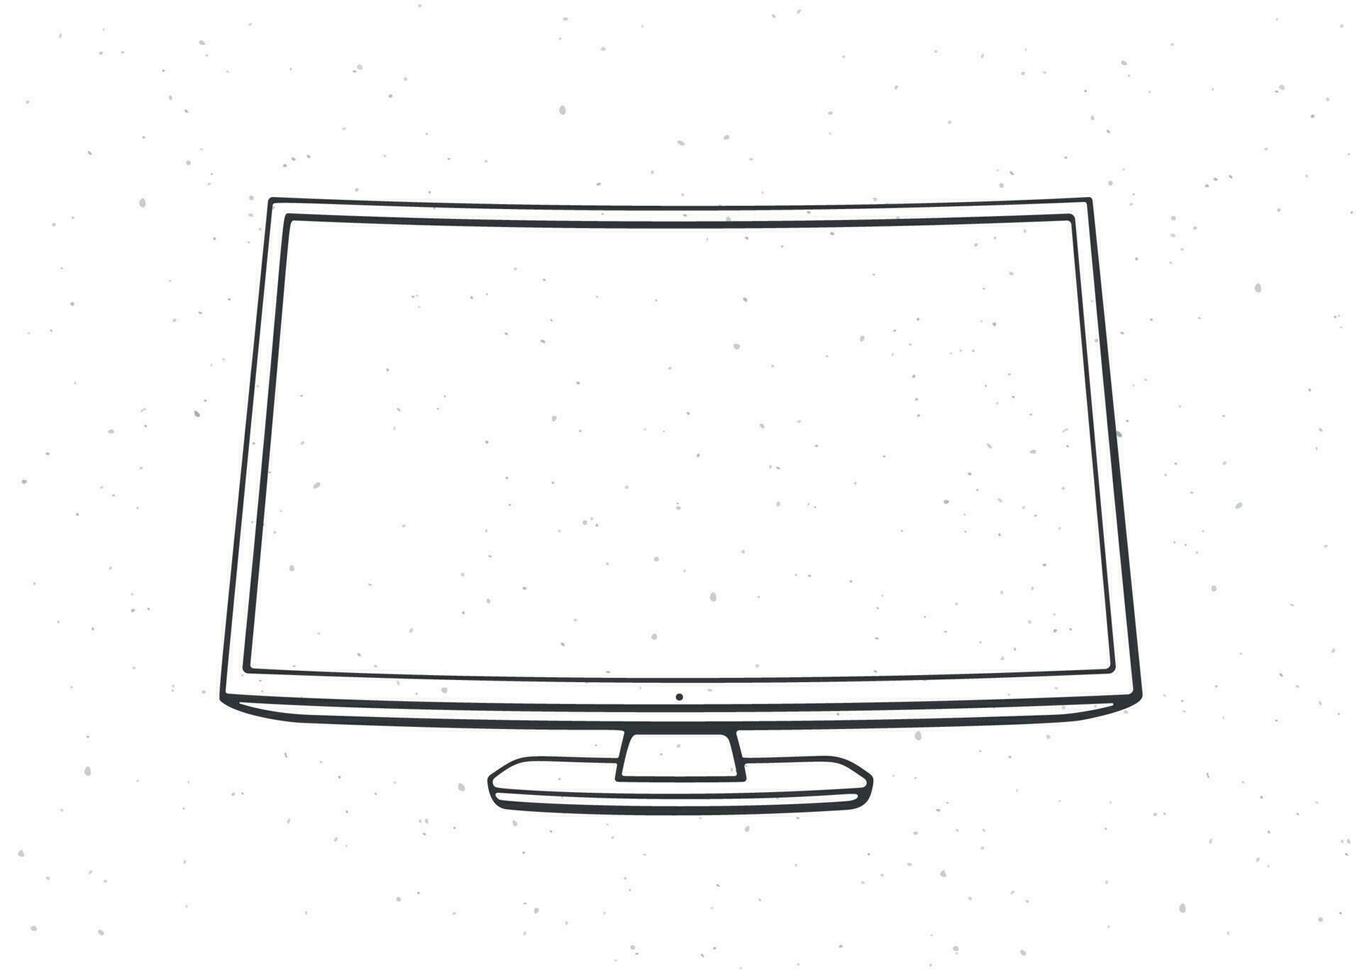 modern Digital Clever Fernseher mit voll Ultra hd Anzeige. Umriss. Vektor Illustration. Fernsehen Box mit lcd oder LED Flachbildschirm zum Video Übersetzung. Hand gezeichnet skizzieren. isoliert Weiß Hintergrund